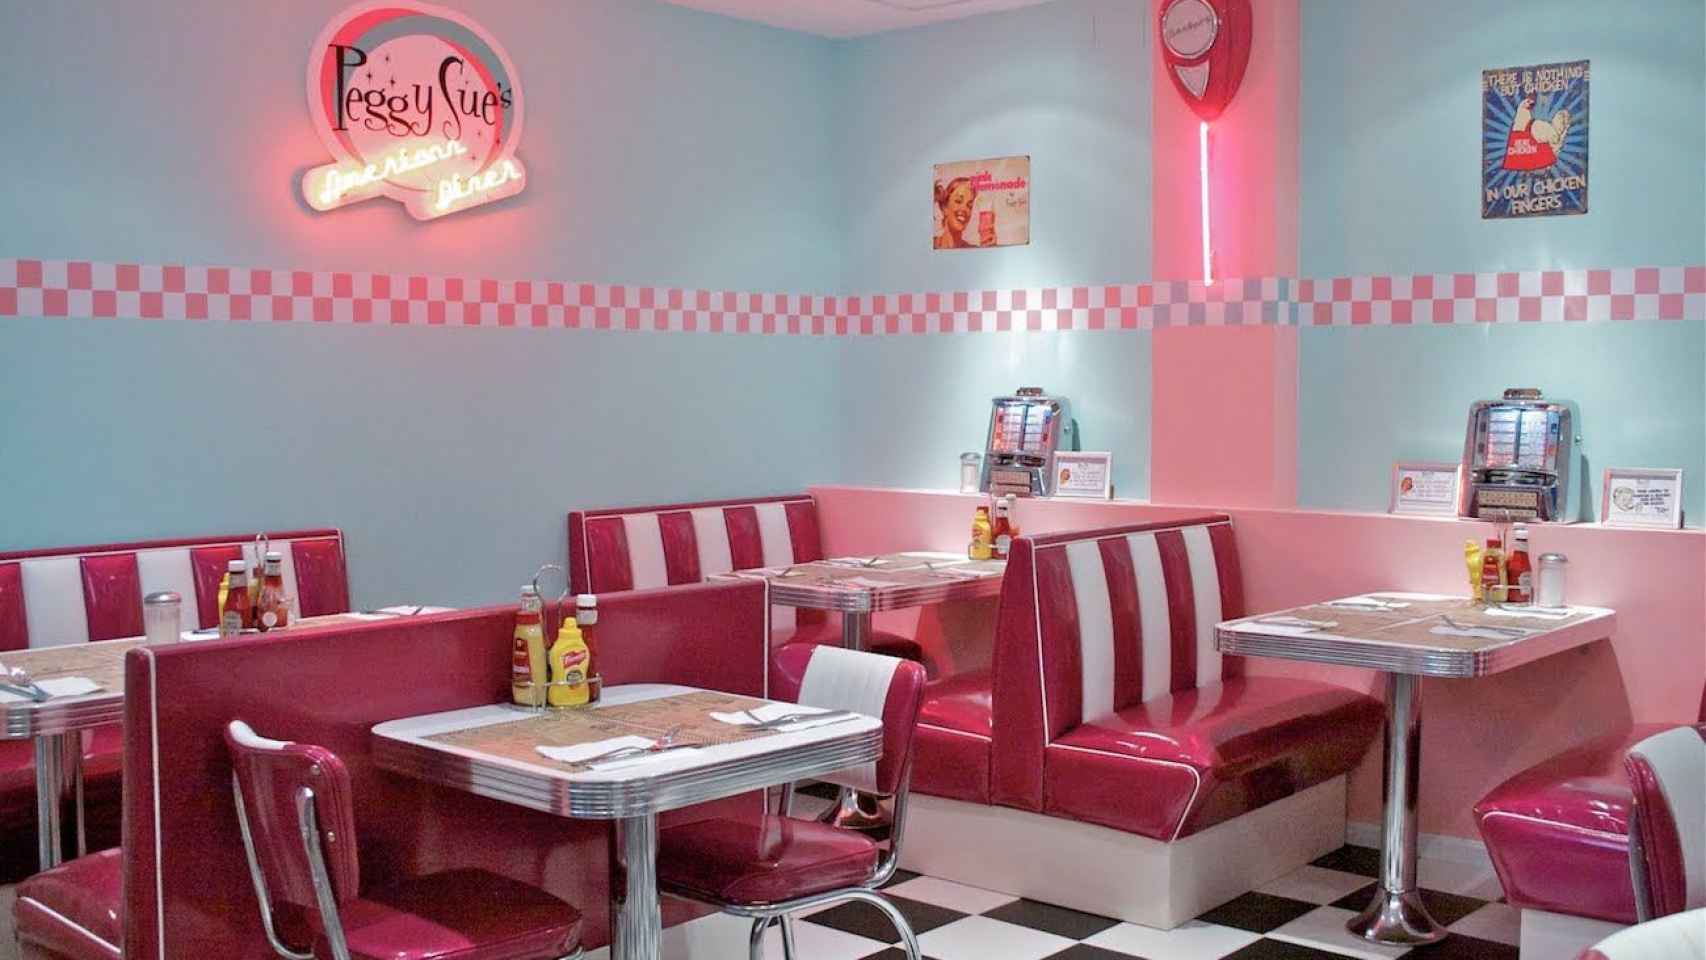 El restaurante Peggy Sue, uno de los locales inspirados en la época de la película 'Grease', para inmortalizar en una publicación de Instagram